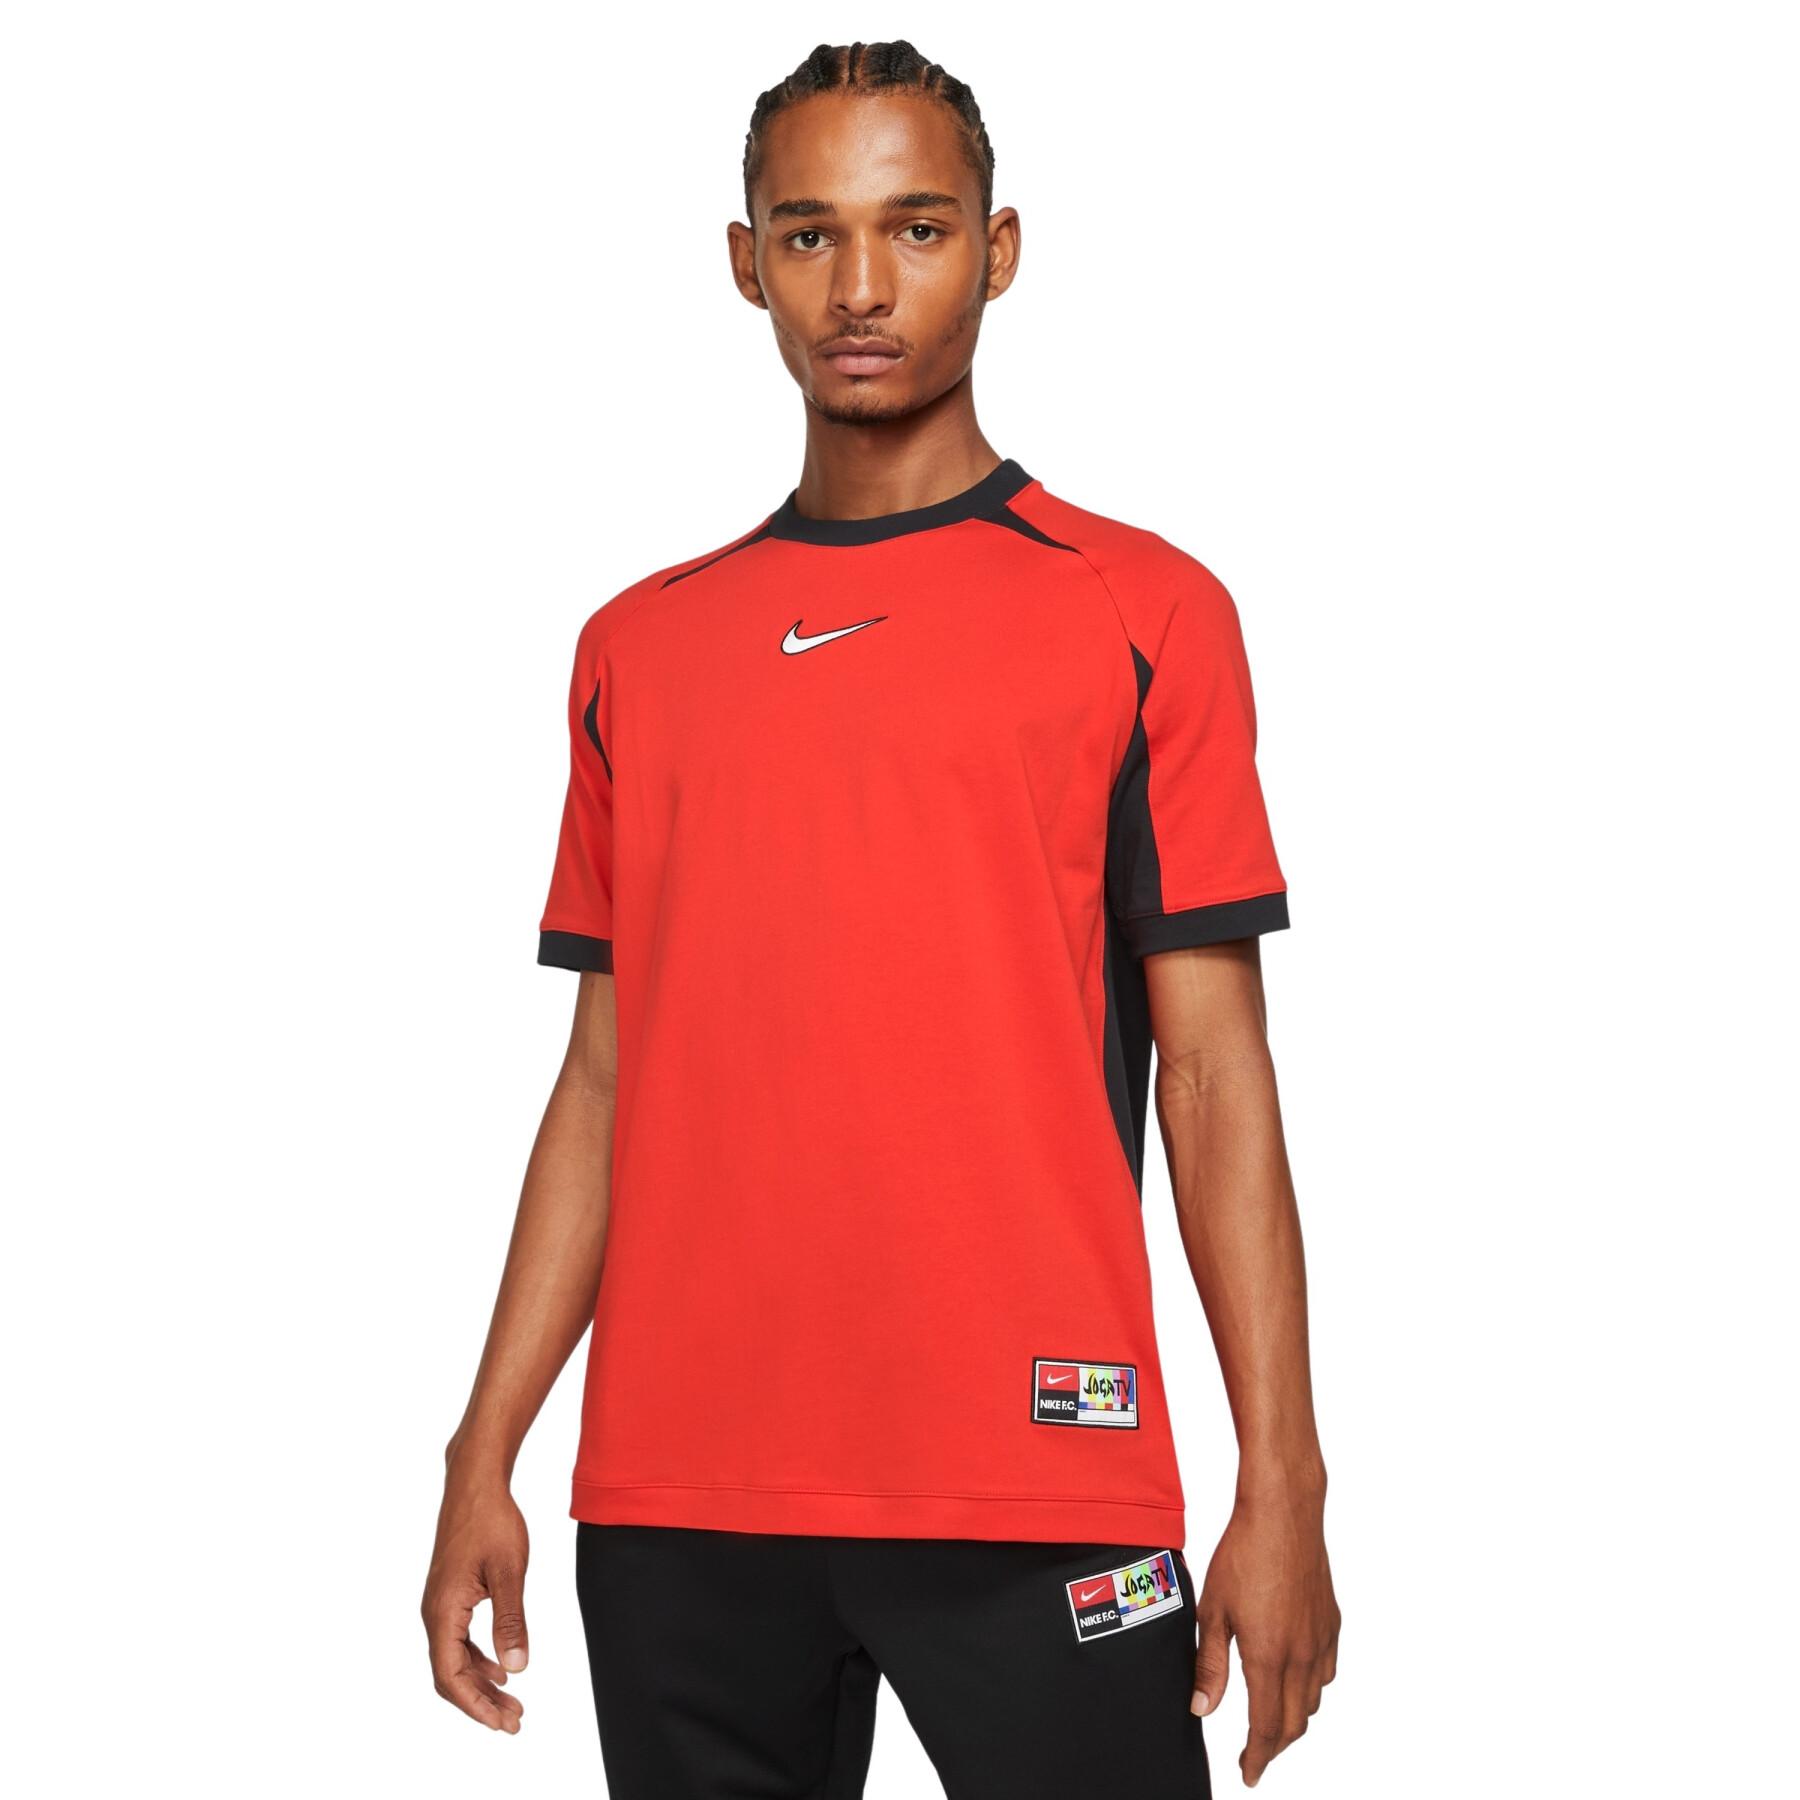 Camiseta Nike FC Home